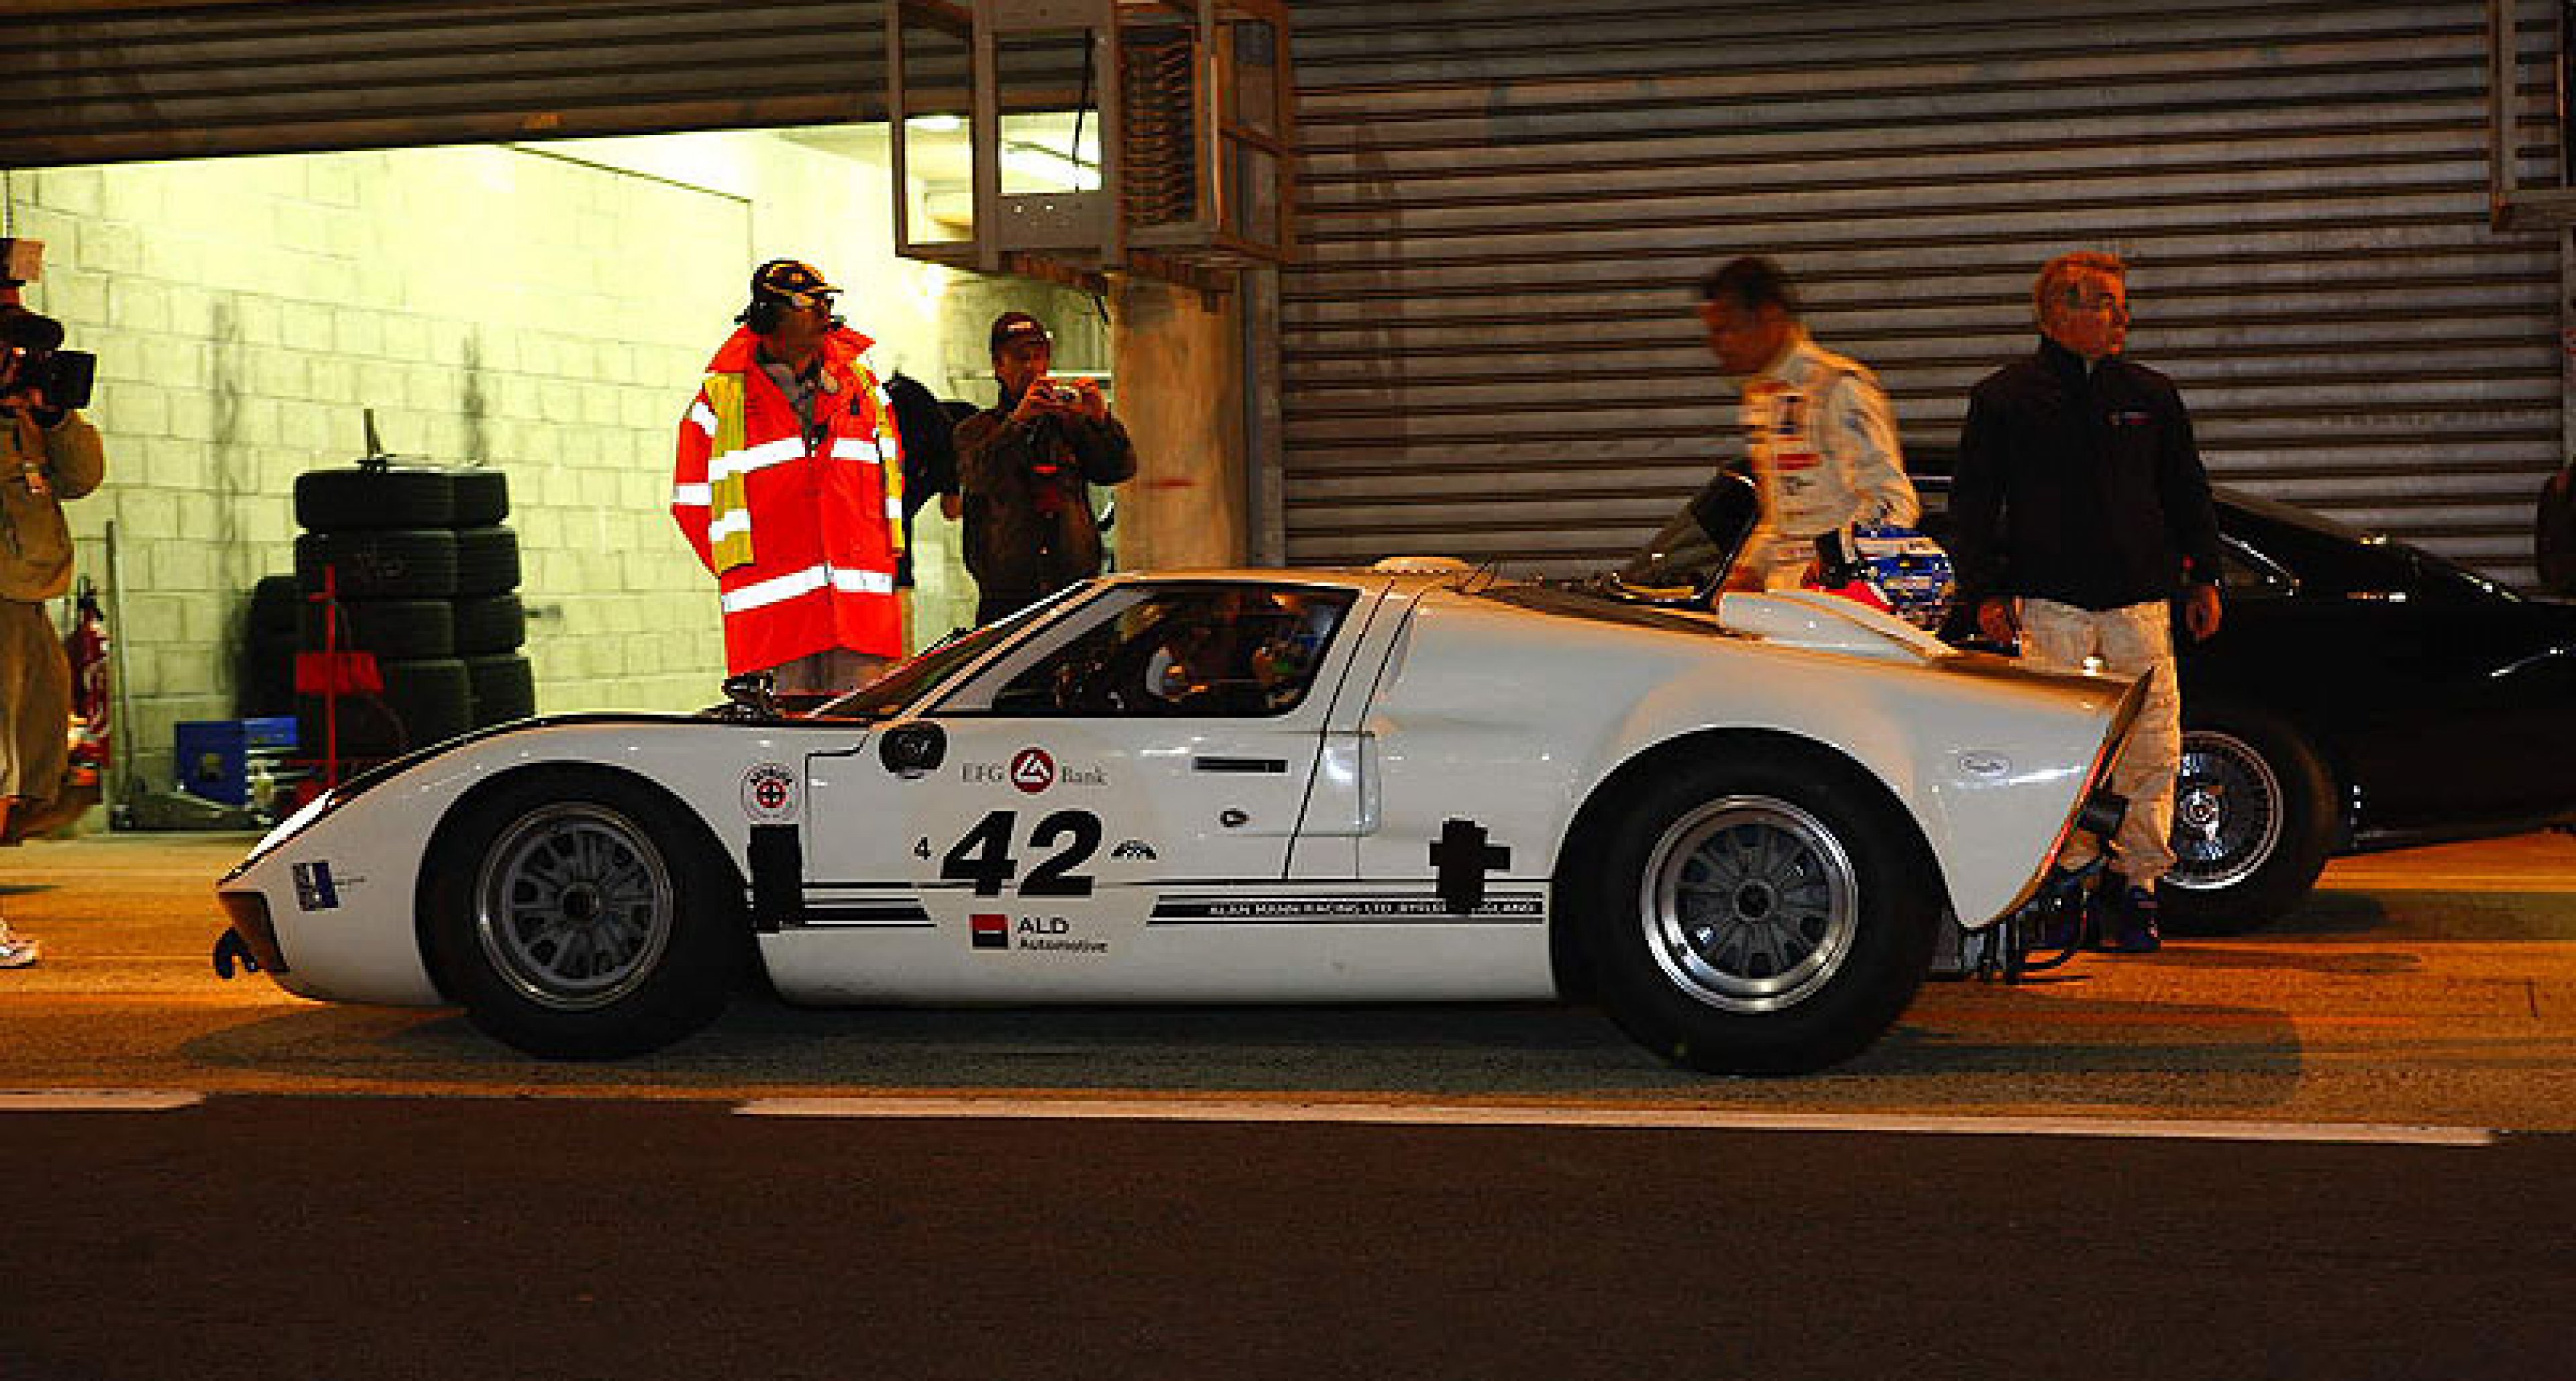 Le Mans Classic 2008